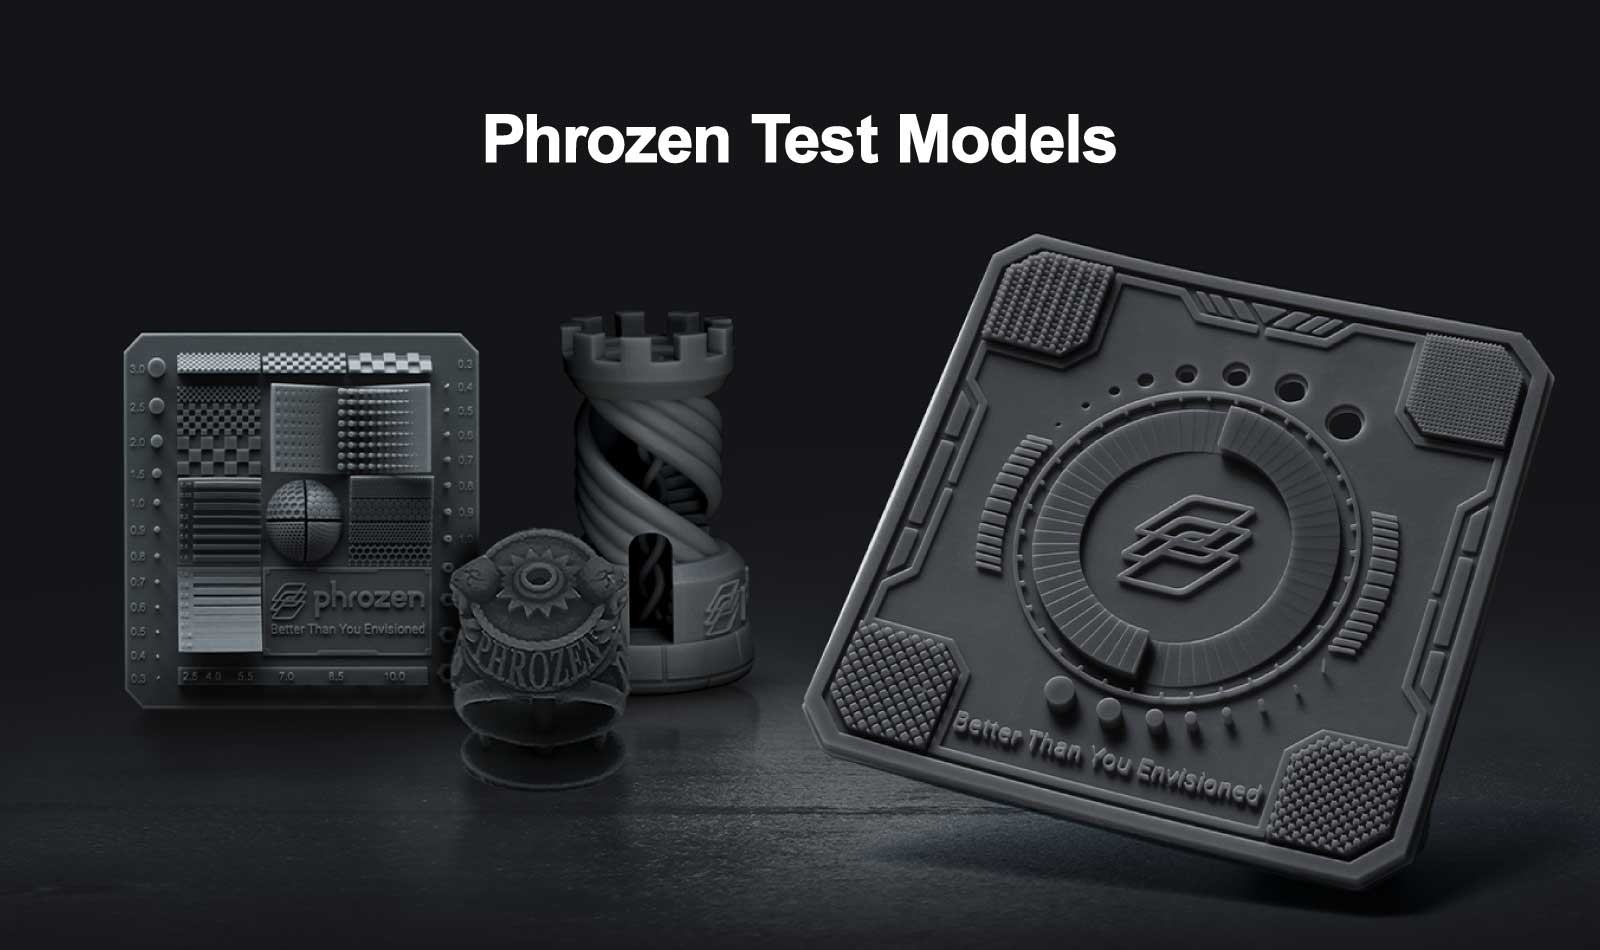 Phrozen テスト モデル: XP Finder、RP Finder、Phrozen Rook、Phrozen リング